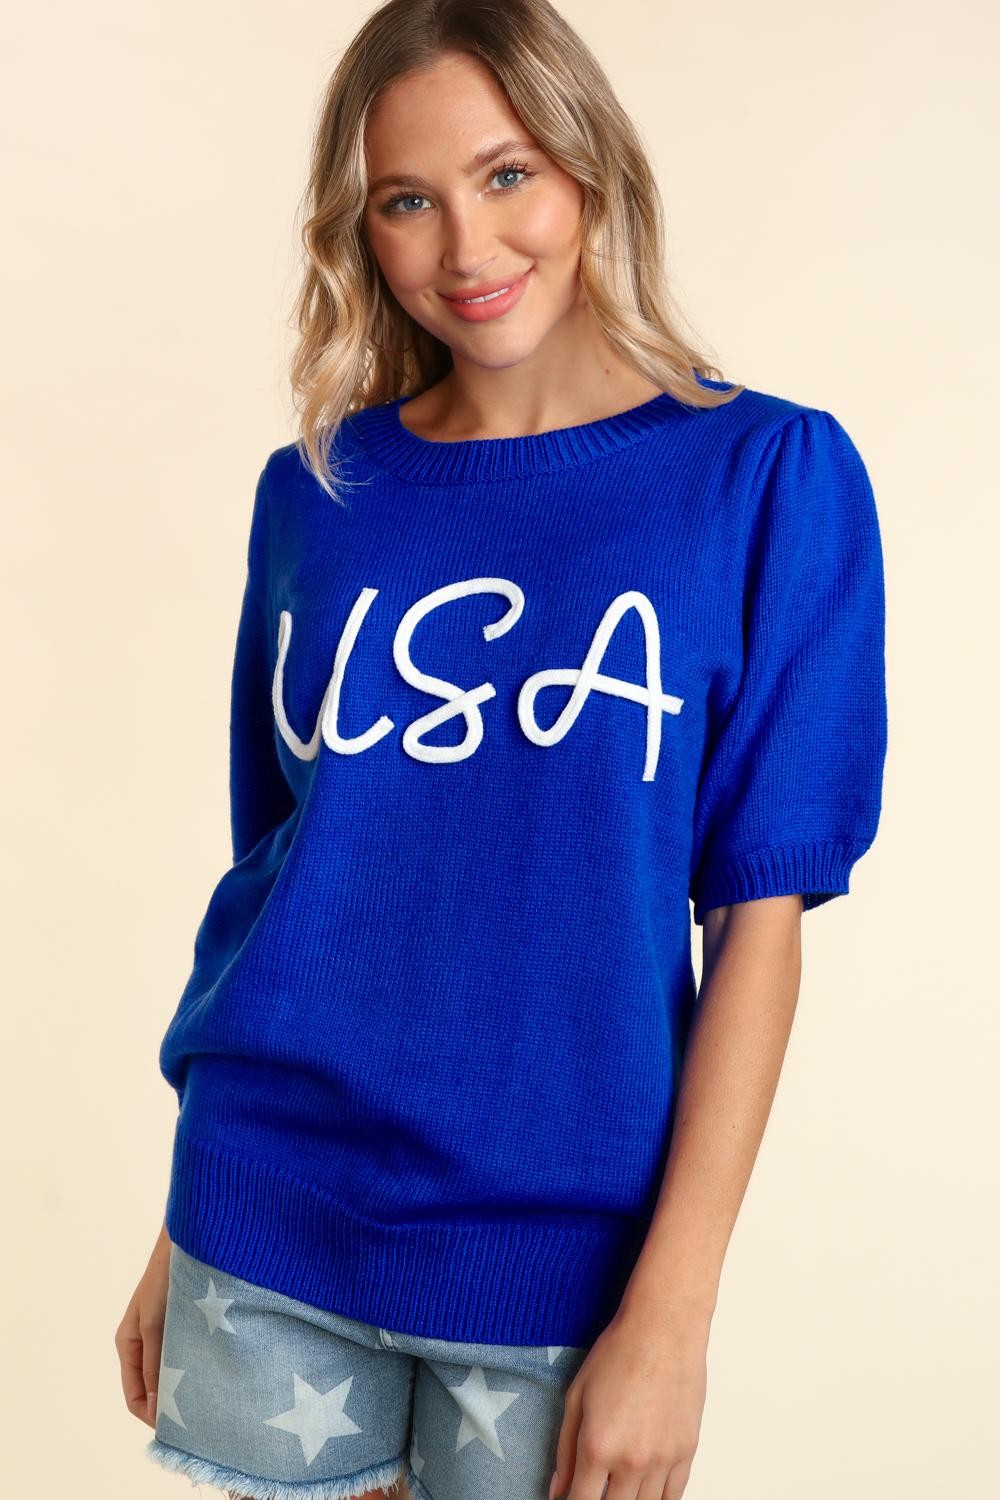 Miss Liberty USA Puff Sleeve Sweater